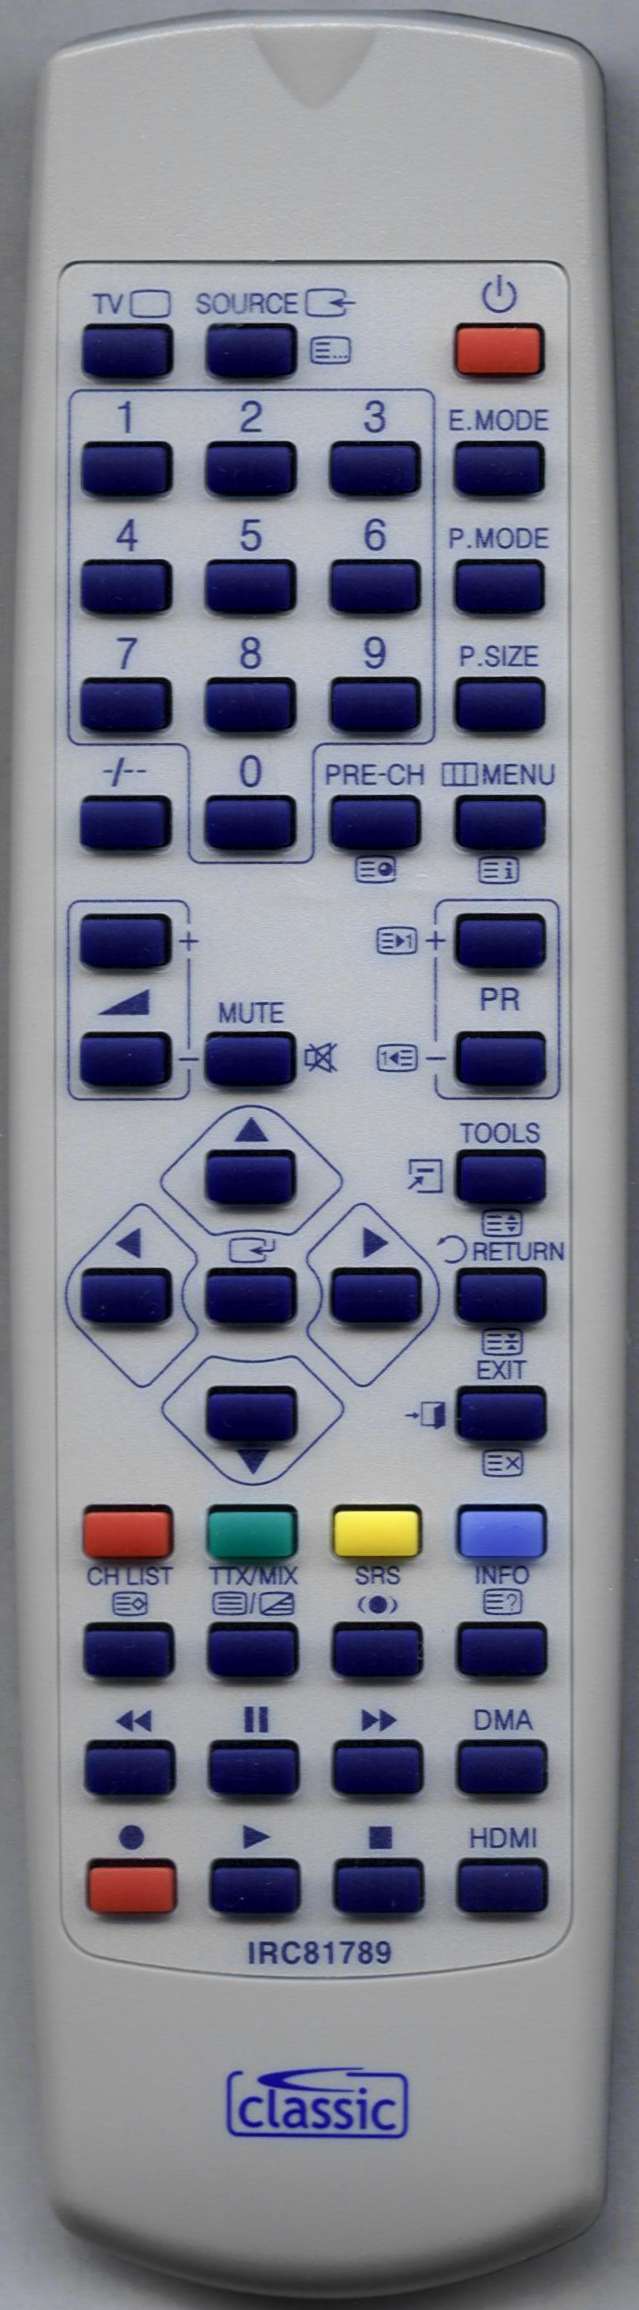 SAMSUNG LE22A451C1 Remote Control Alternative